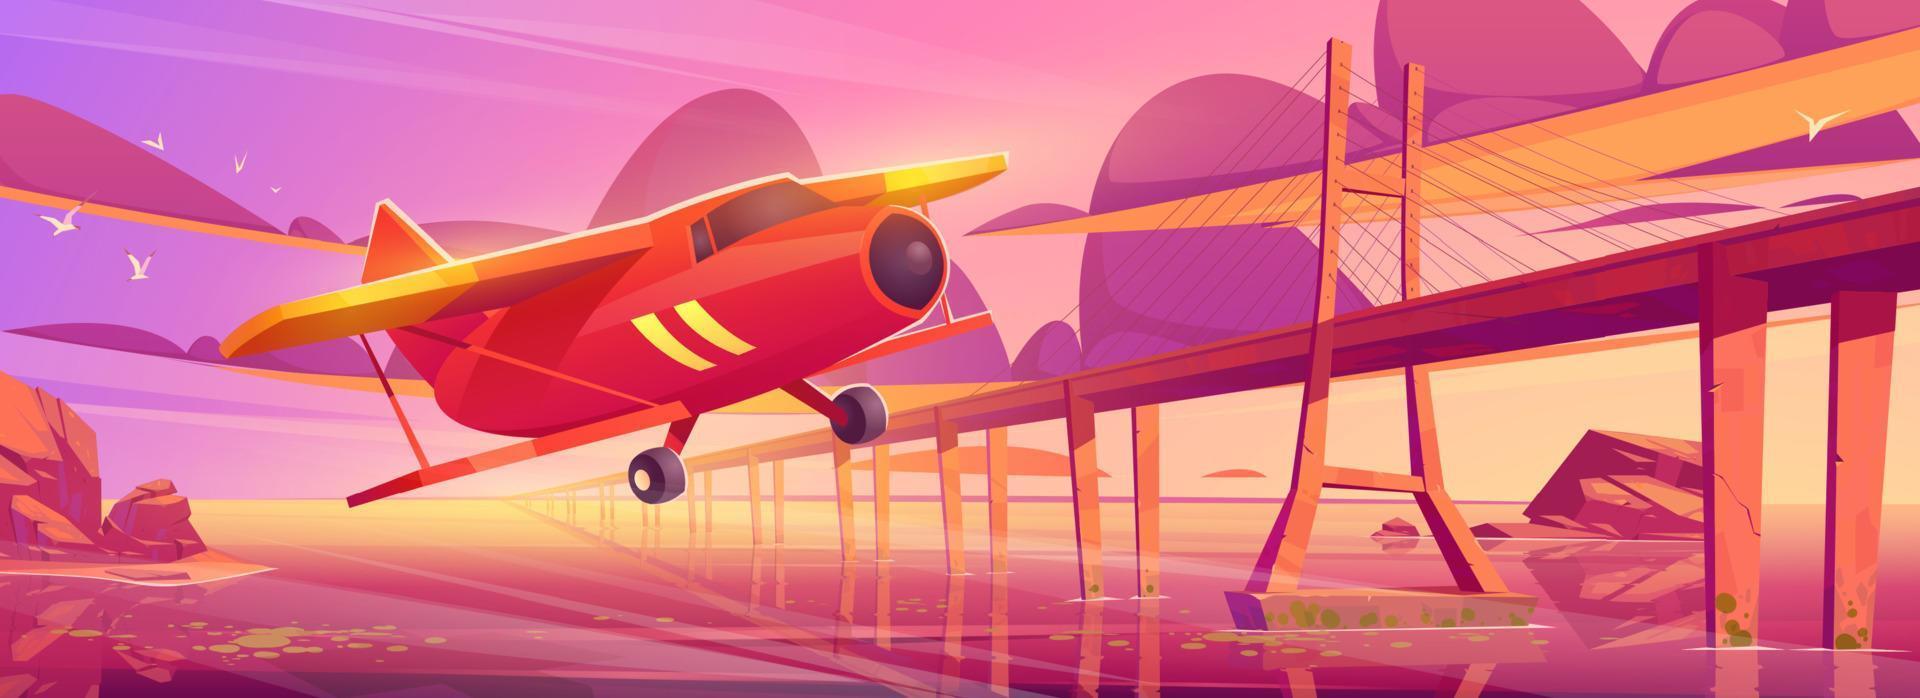 pequeno avião voando ao pôr do sol oceano com ponte vetor